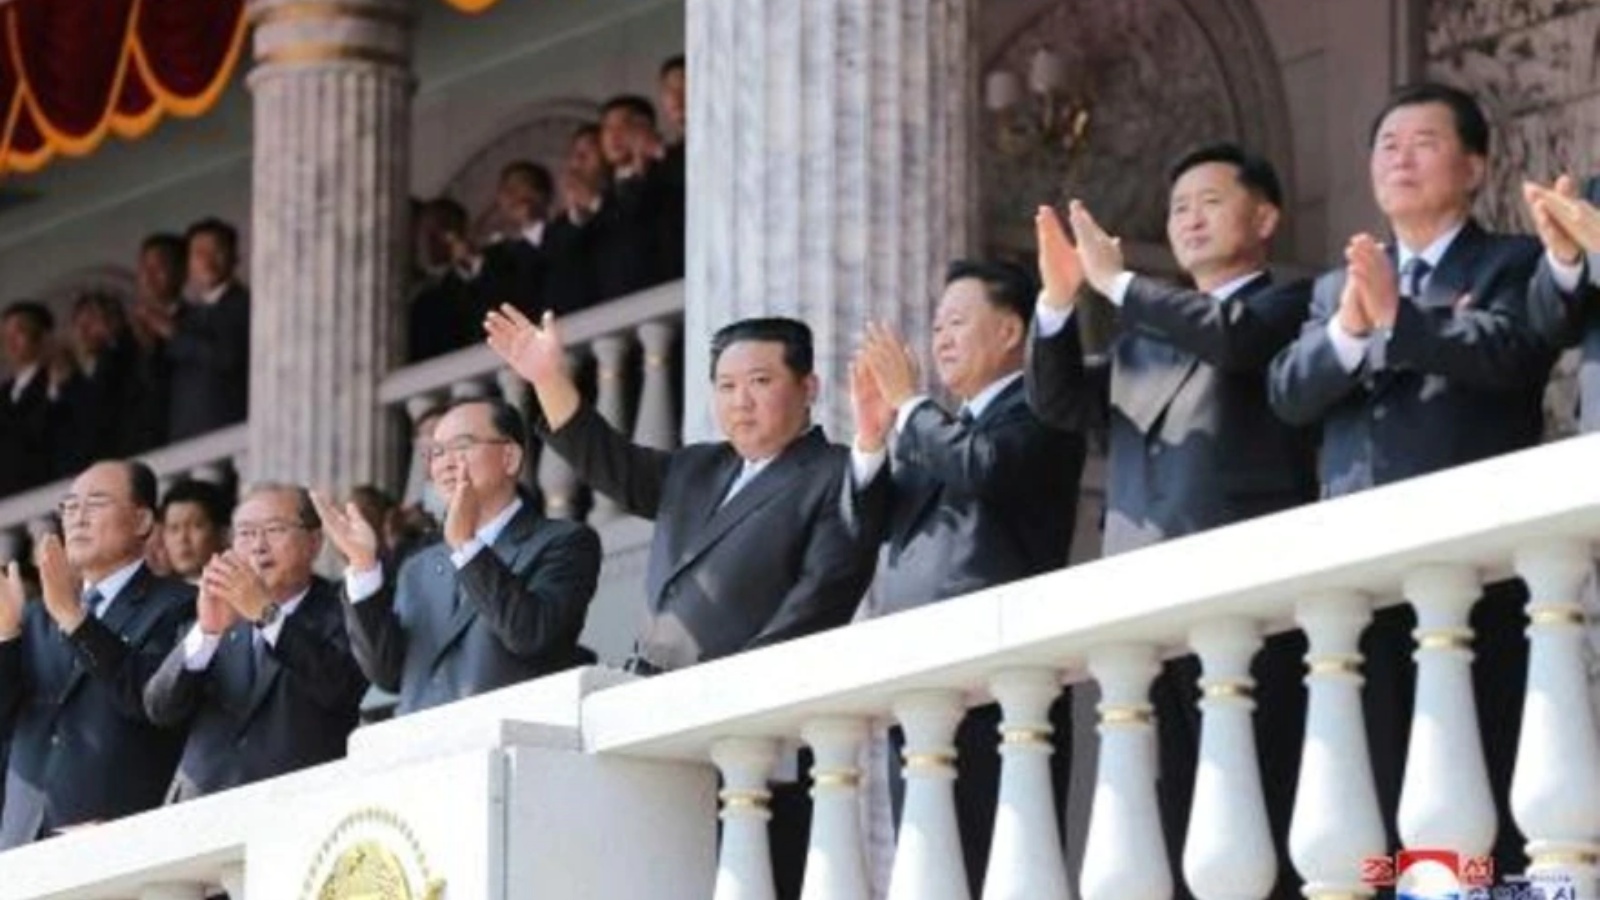 الزعيم الكوري الشمالي كيم جونغ أون يلوح من الشرفة للحشود في ساحة كيم إيل سونغ في بيونغ يانغ في 15 أبريل 2021 بمناسبة مرور 110 أعوام على مؤسس البلاد بمناسبة الذكرى الـ 110 لميلاد كيم إيل سونغ، جده والزعيم المؤسس البلا